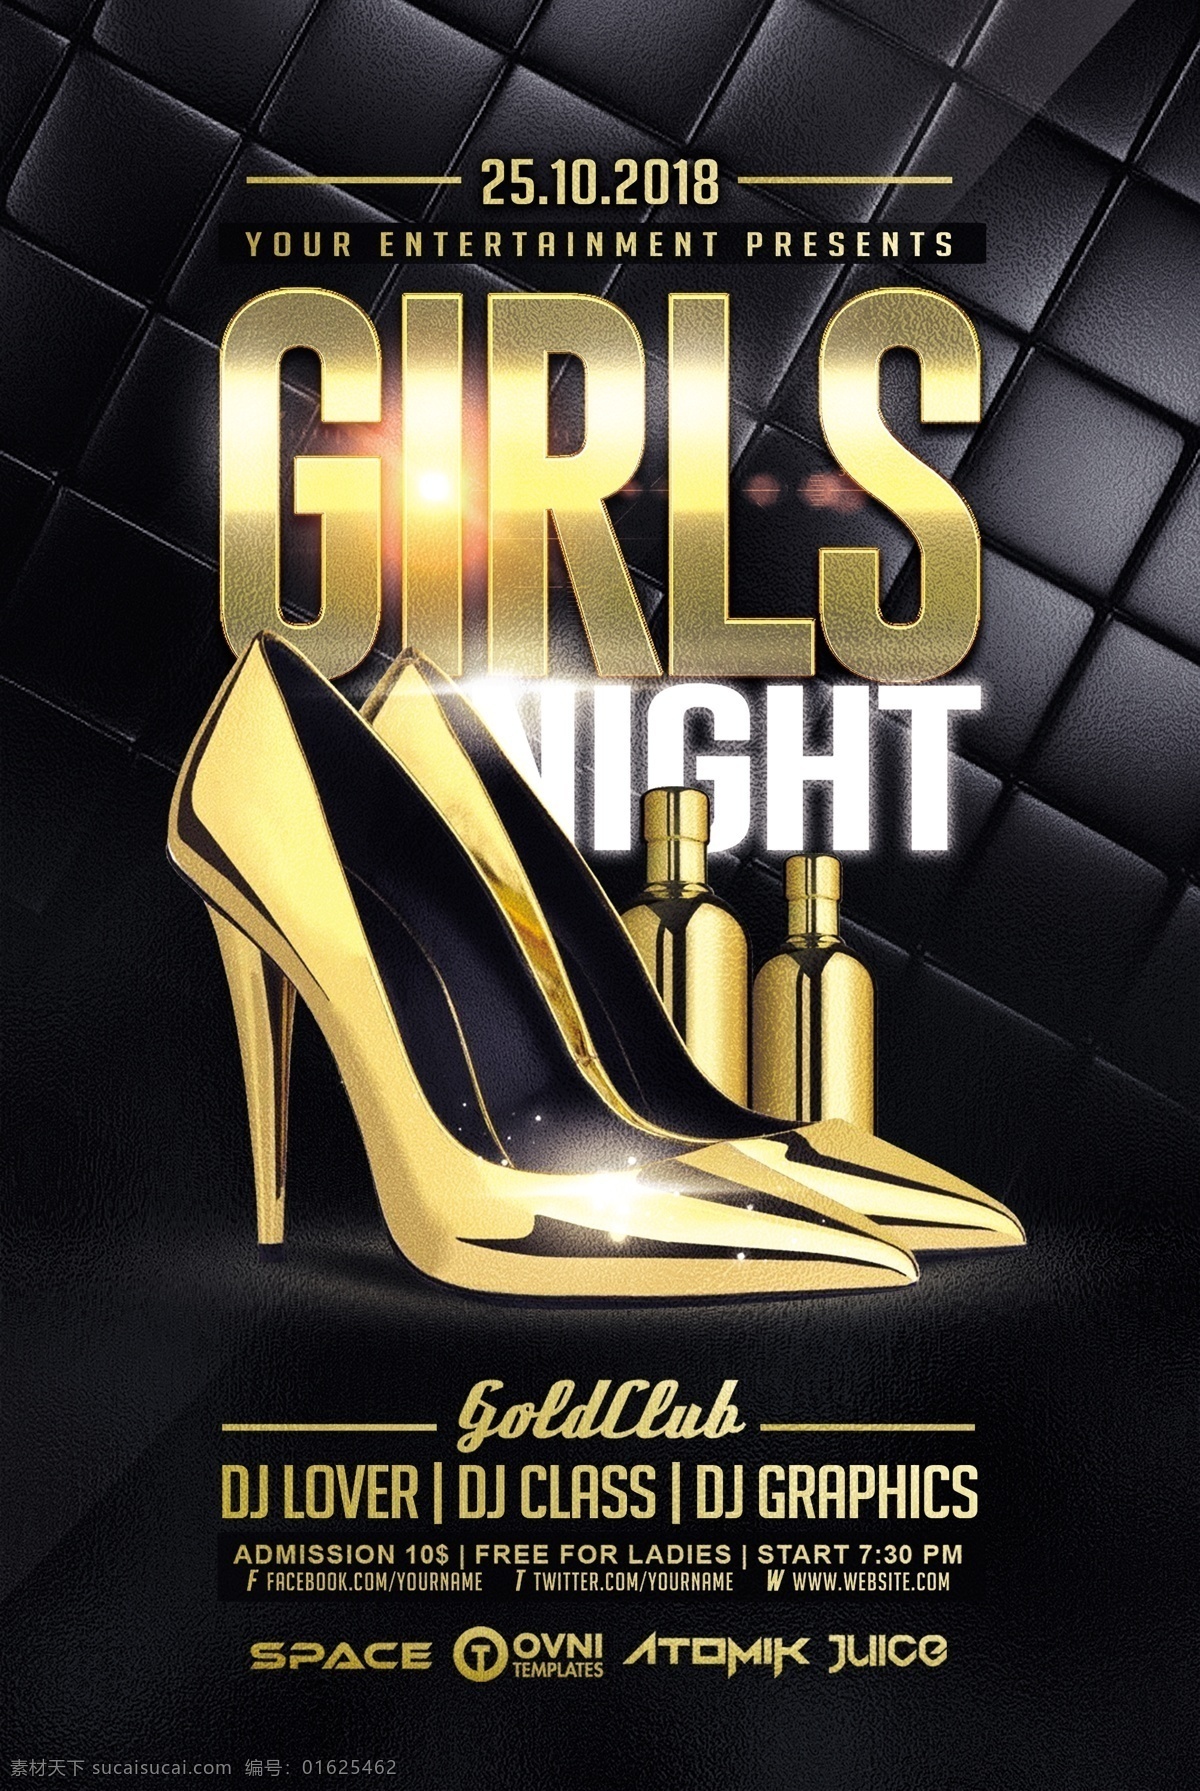 女孩 夜 酒吧 海报 女孩之夜酒吧 夜店 酒吧海报 金色高跟鞋 潮流 psd素材